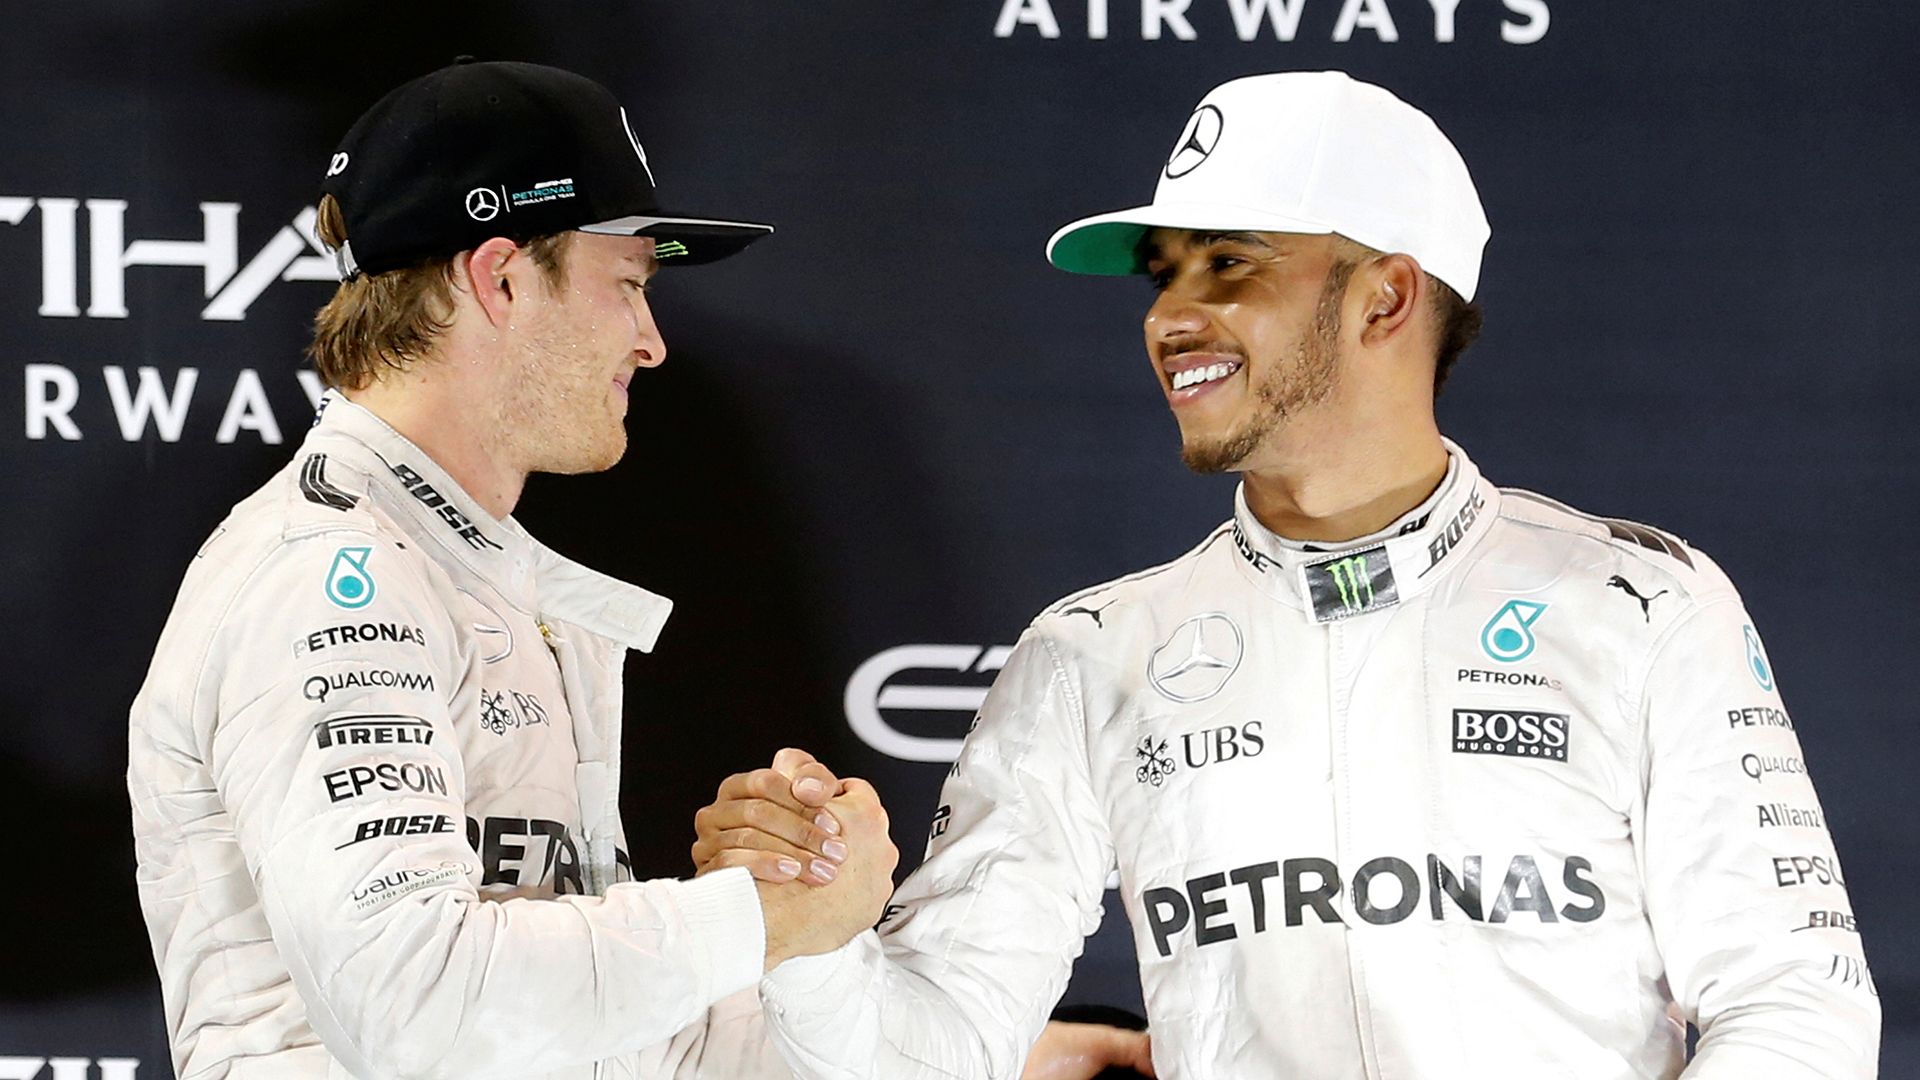 La stretta di mano tra Rosberg e Hamilton sul podio di Yas Marina (foto da: fantv.se/REUTERS/Ahmed Jadallah)